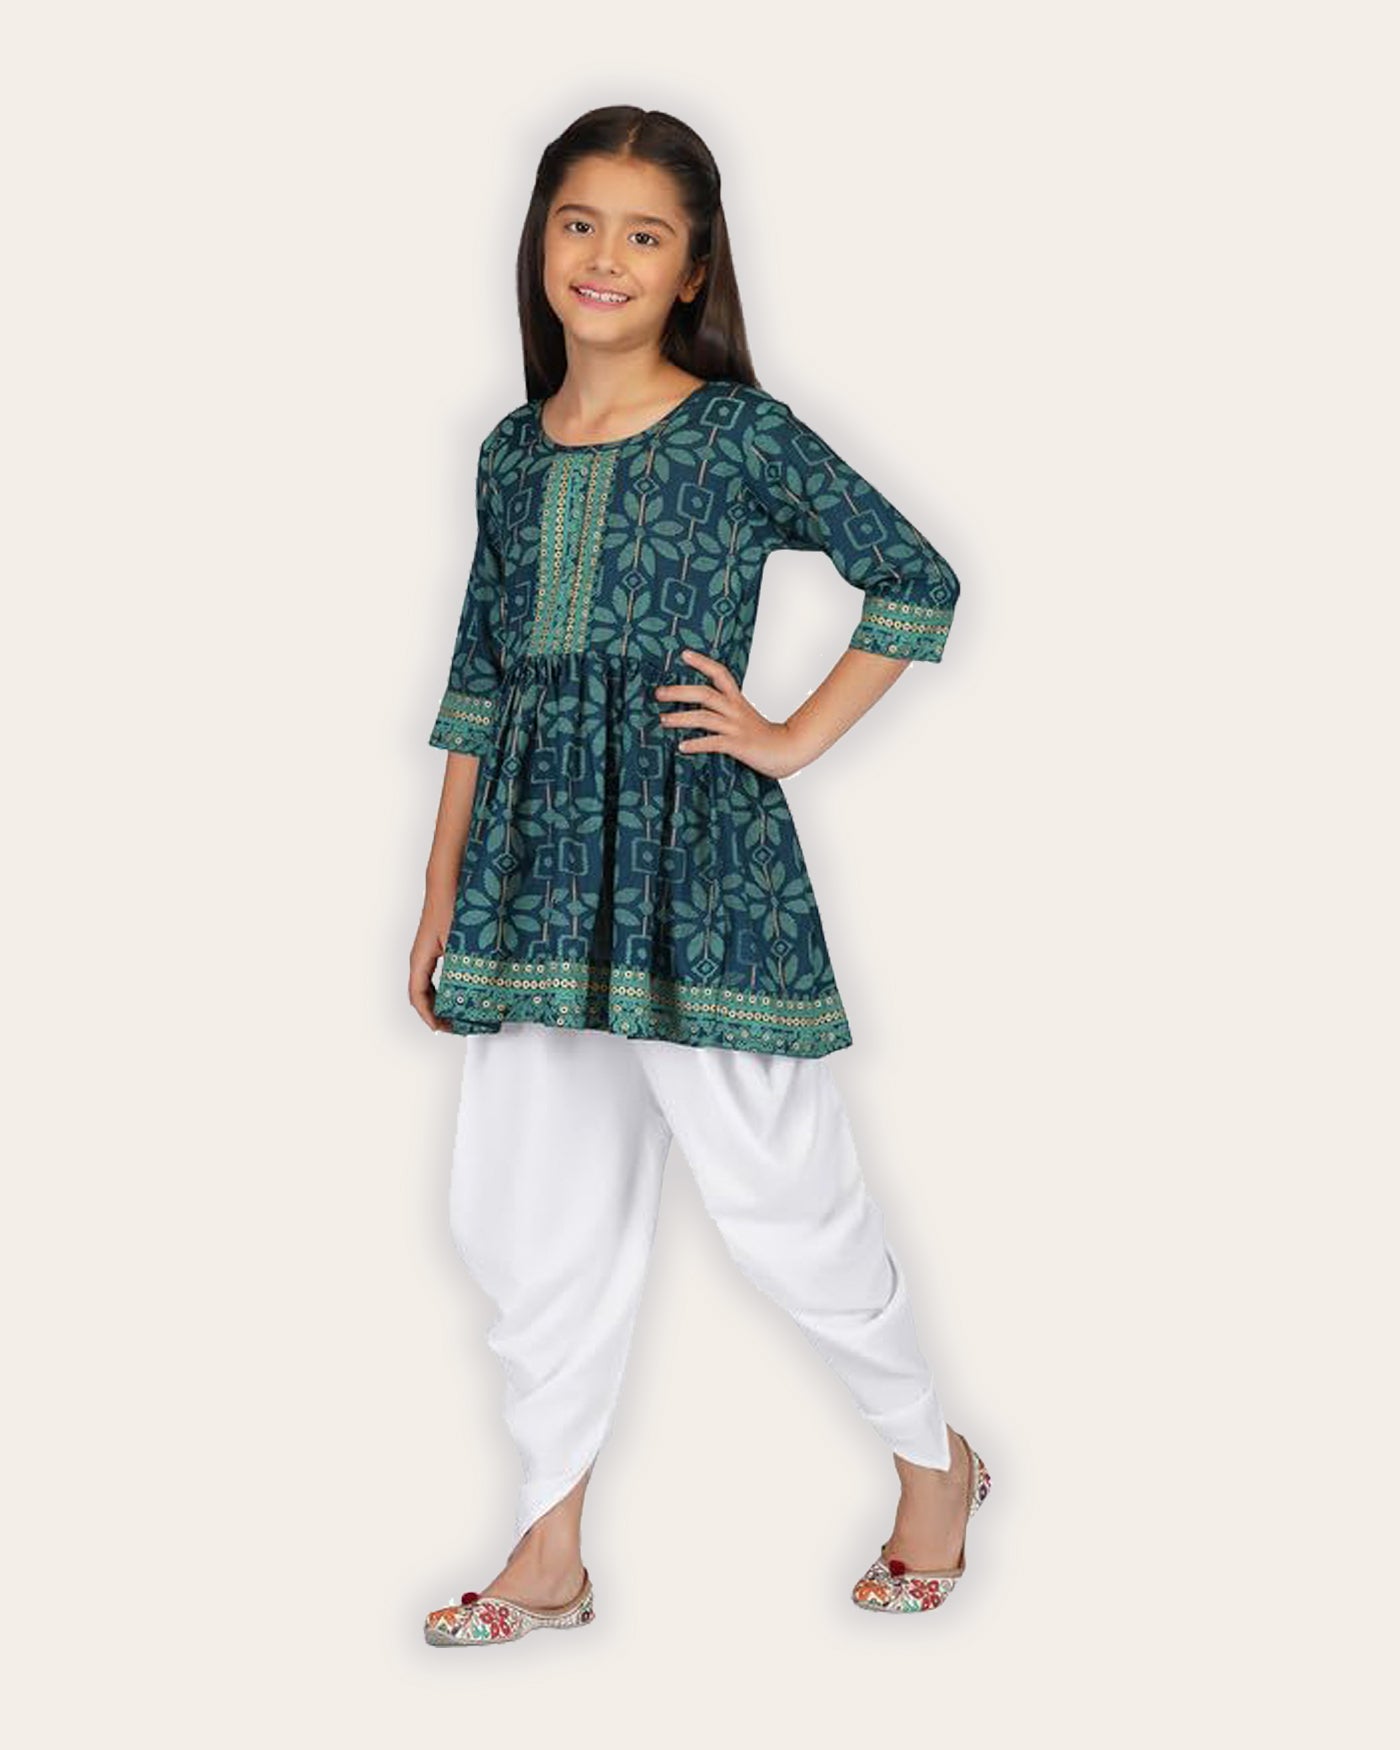 Kaaludii Dhoti Kurta Set for Girls Rayon Printed Round Neck Ethnic Wear for Kids Girls Salwar Suit and Dhoti Pant Set